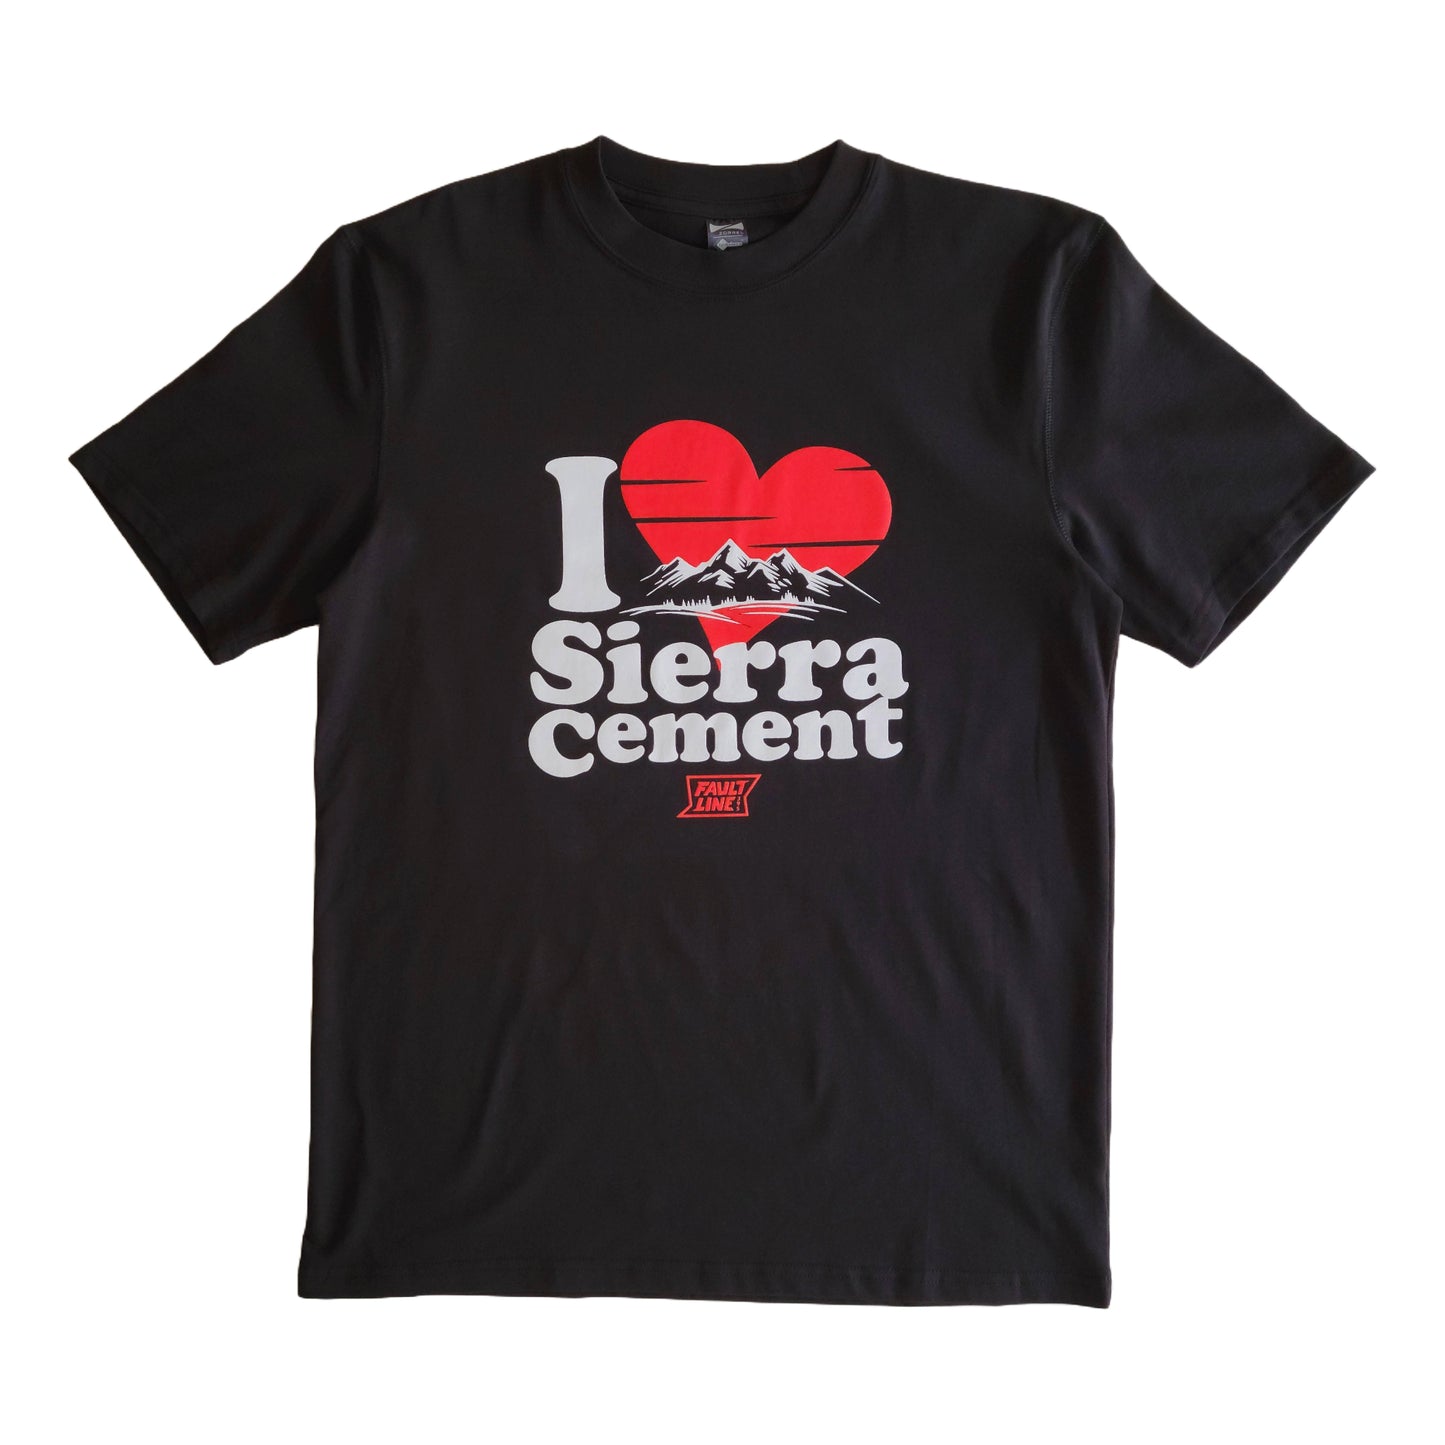 Sierra Cement Tee - Black